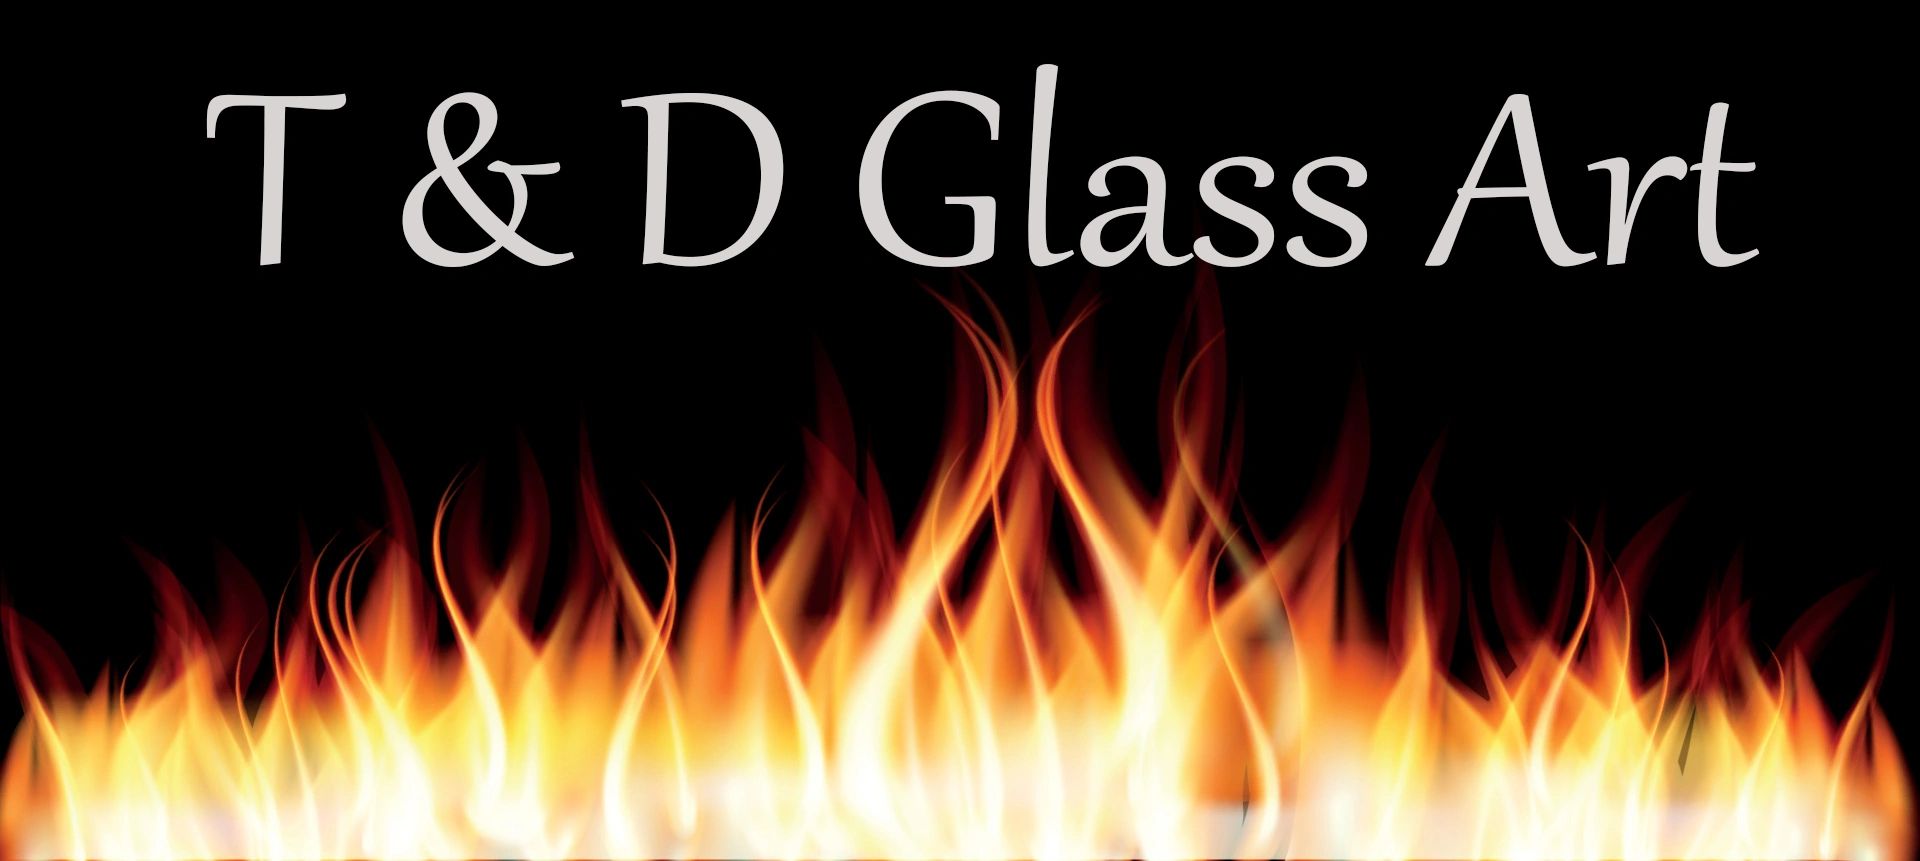 T&D Glass Art logo with flames below